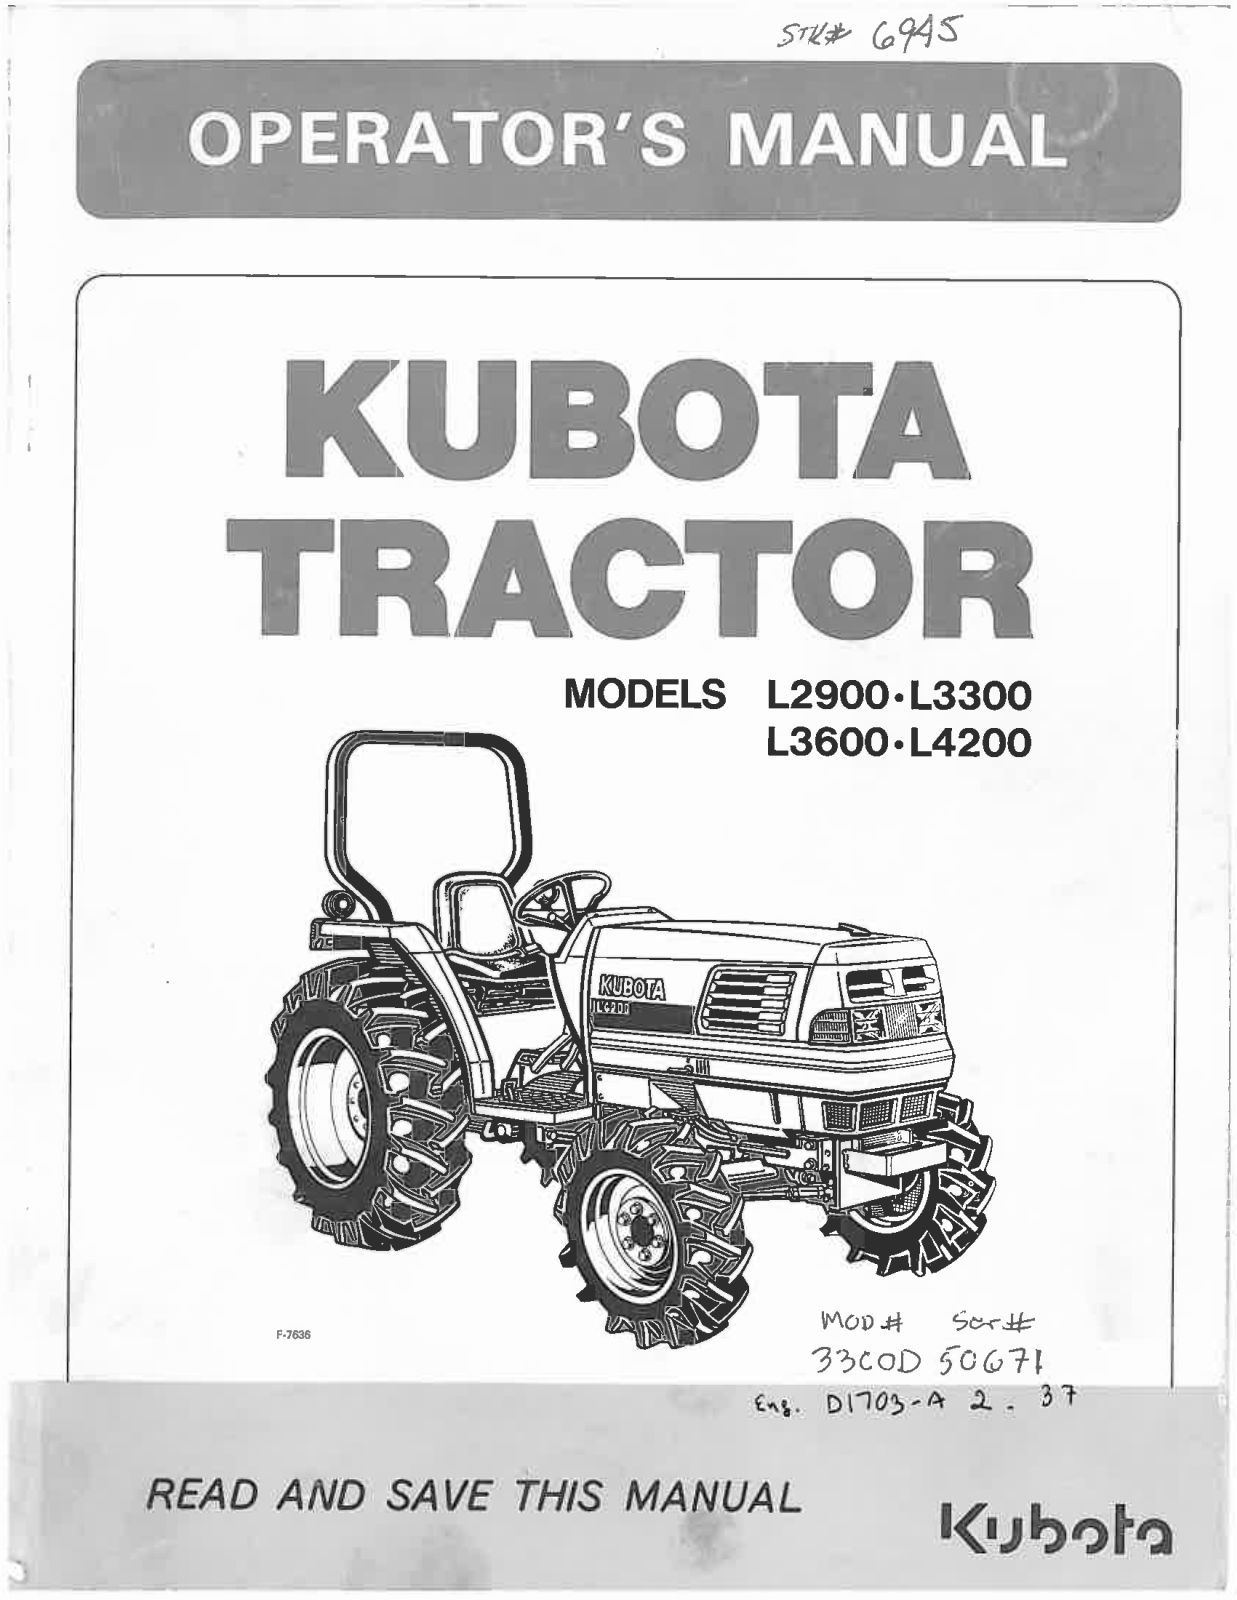 Kubota L2900, L3300, L3600, L4200 Operators Manual